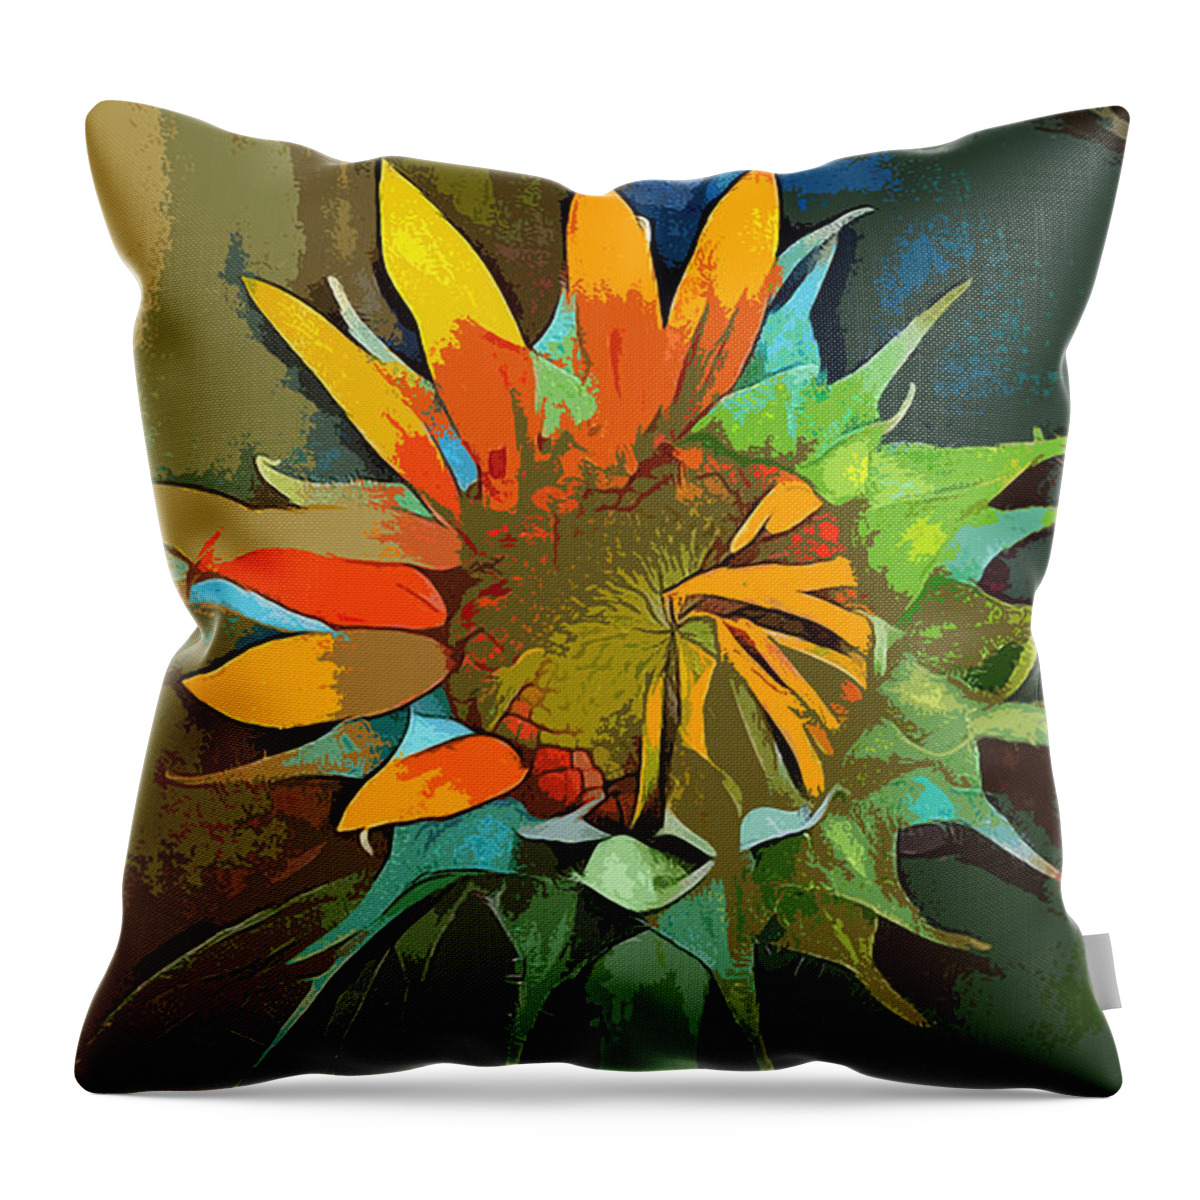 Nature Throw Pillow featuring the digital art Sunflower by Pennie McCracken